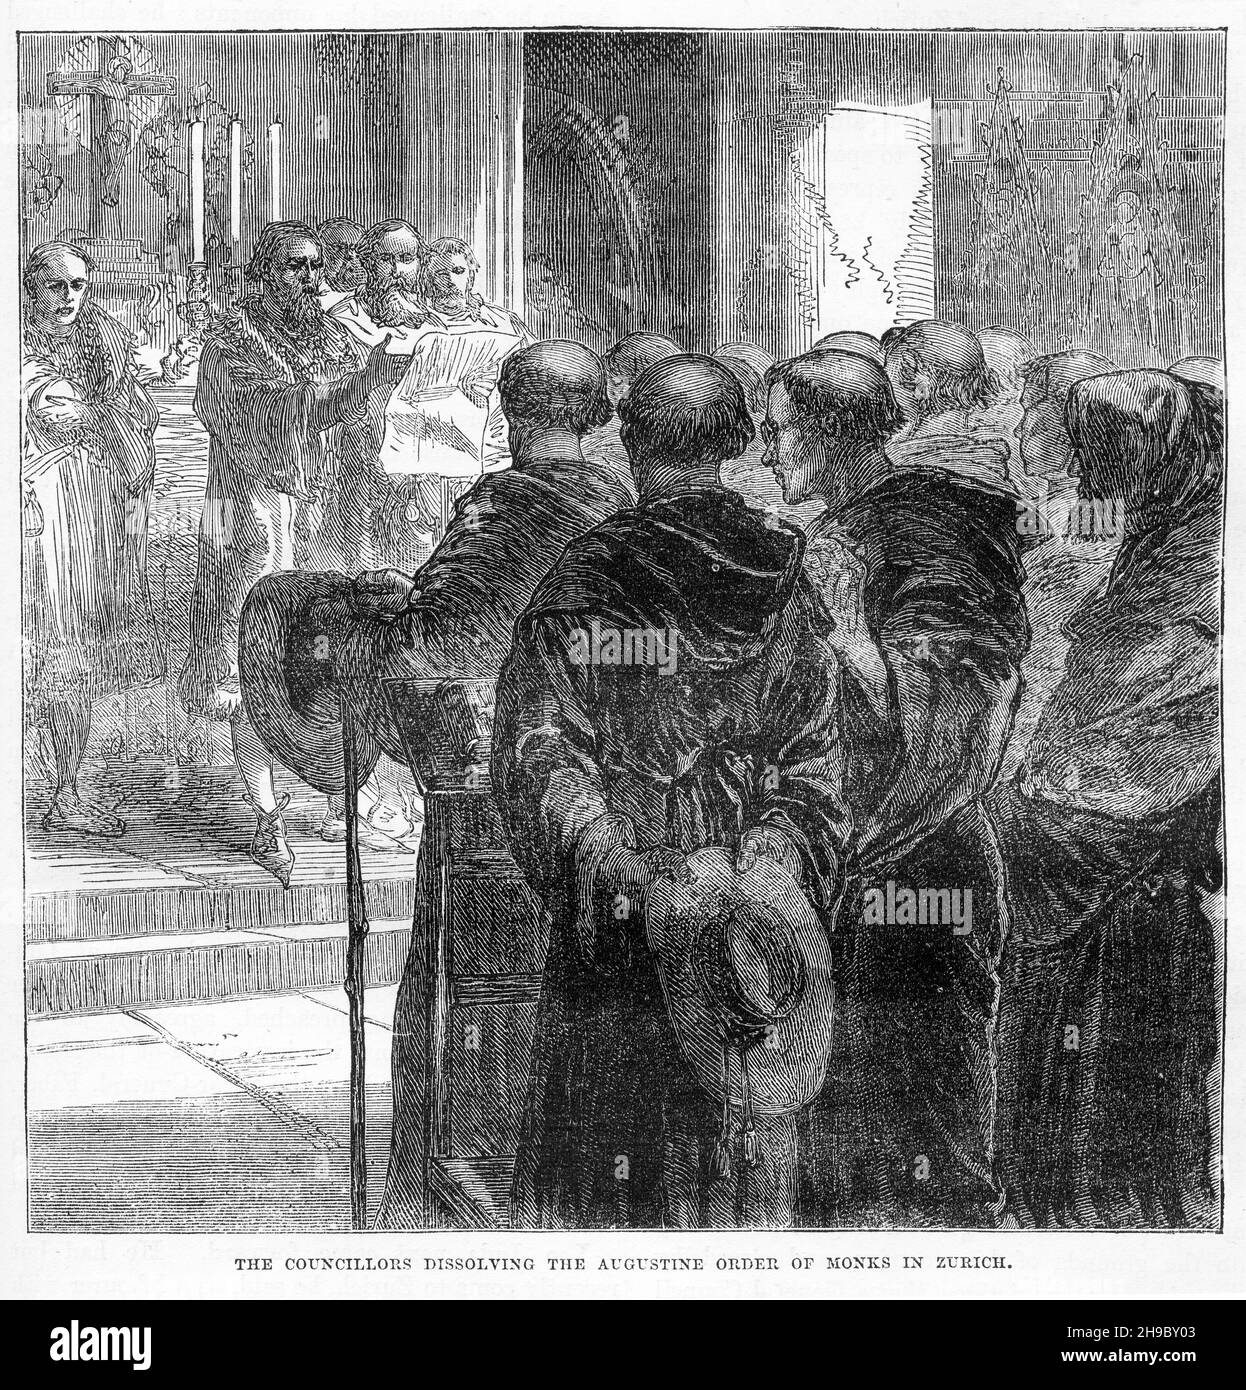 Incisione dei consiglieri che sciolgono l'Ordine Agostino della Chiesa Cattolica di Zurigo, una pietra miliare nella diffusione della riforma nel corso del Cinquecento. Foto Stock